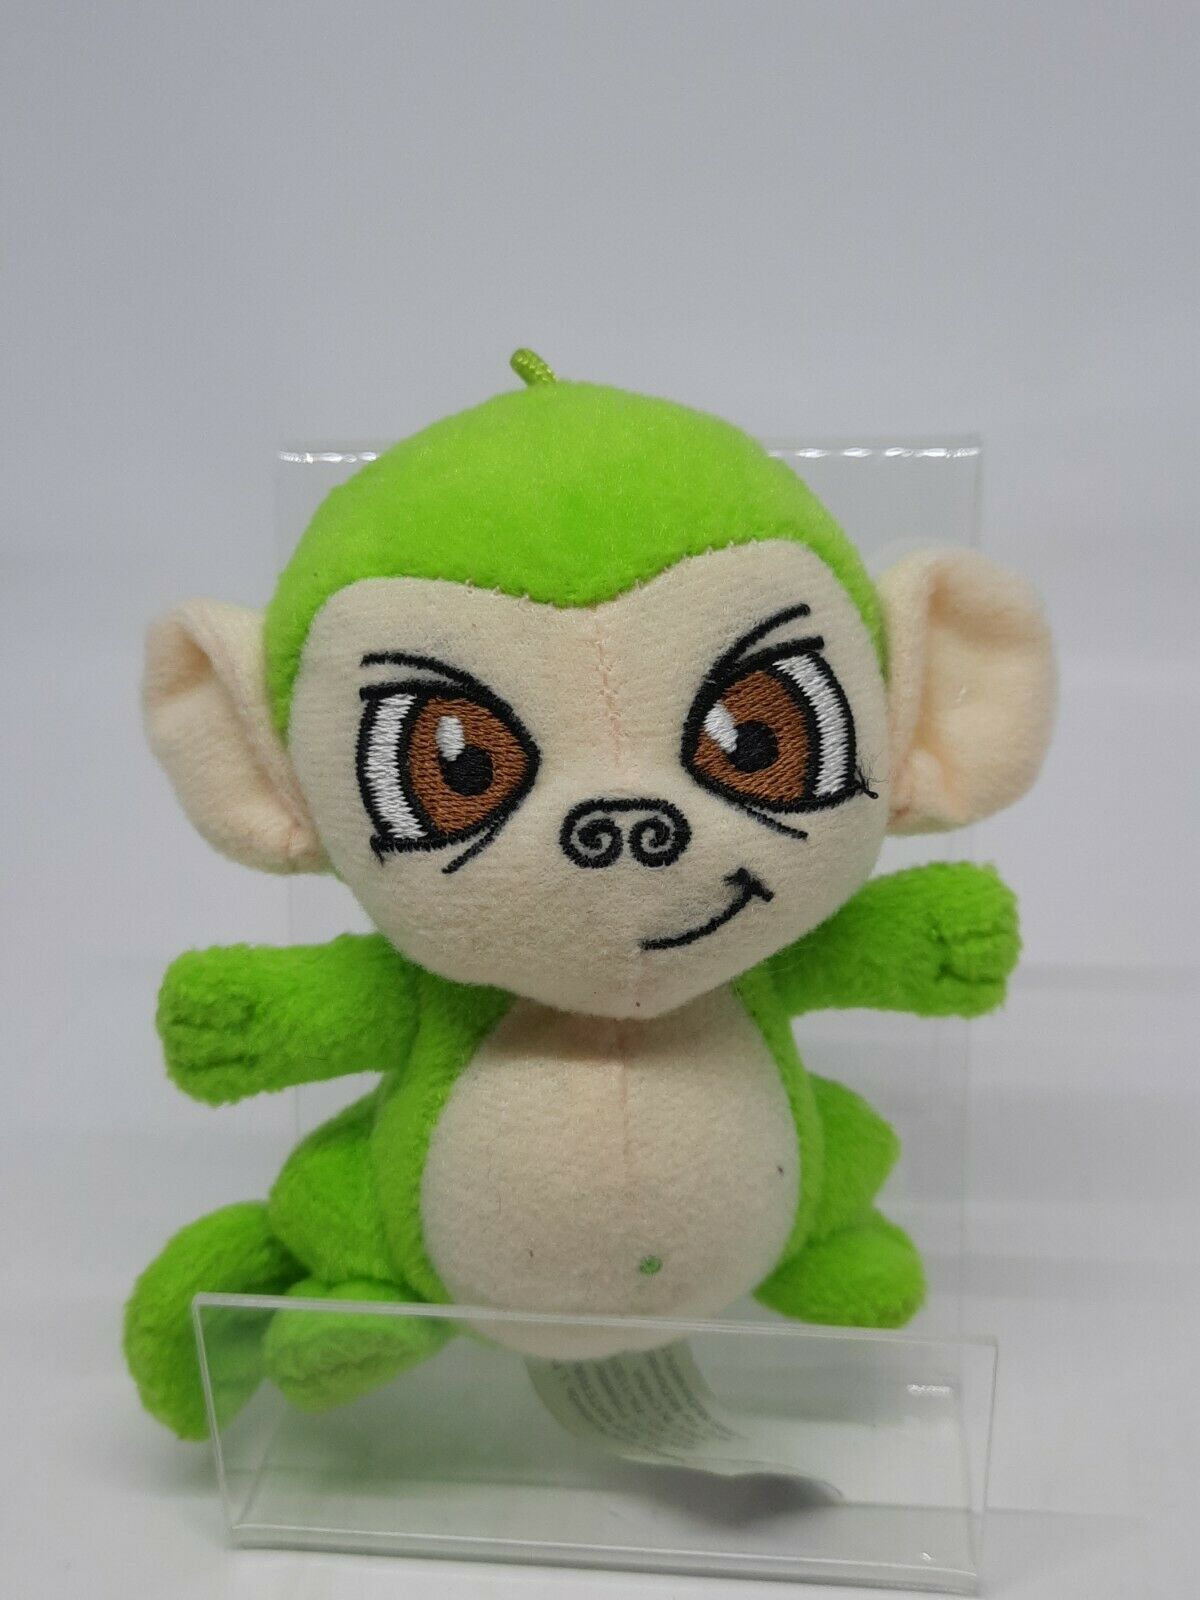 4" Neopets Monkey Plush Stuffed Animal ~ Green Mynci